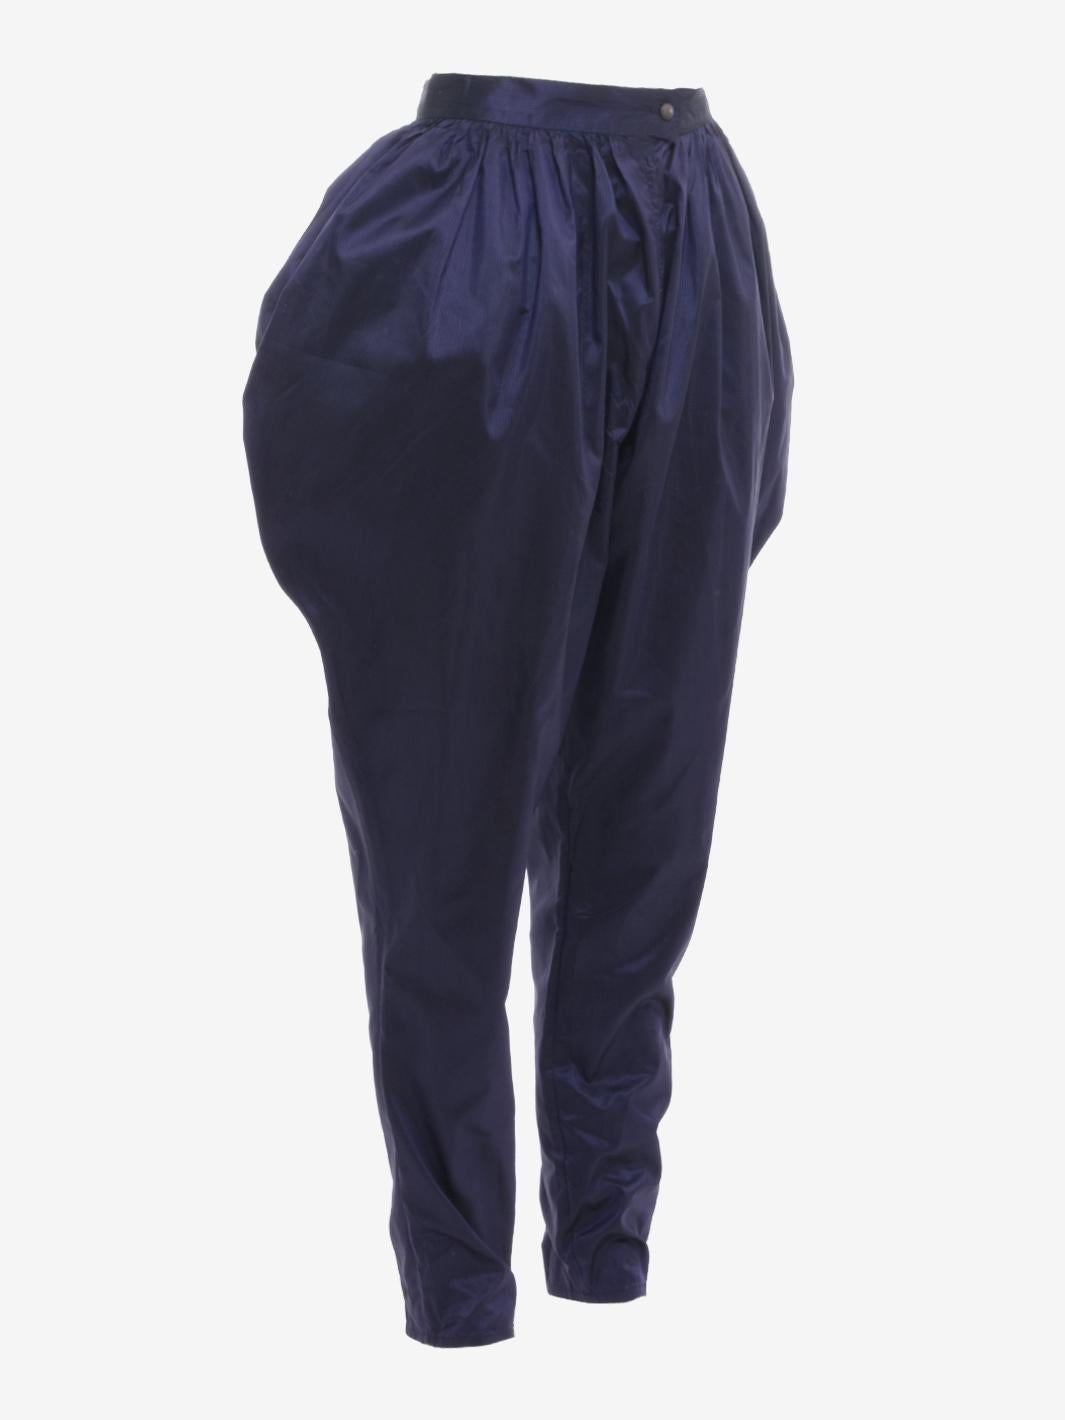 Le pantalon Ballon de soie de Krizia est un pantalon de style indien probablement fabriqué à la fin des années 1970. Le vêtement est doté d'une taille haute boutonnée, de poches latérales et d'une coupe douce et fraîche grâce notamment au tissu de